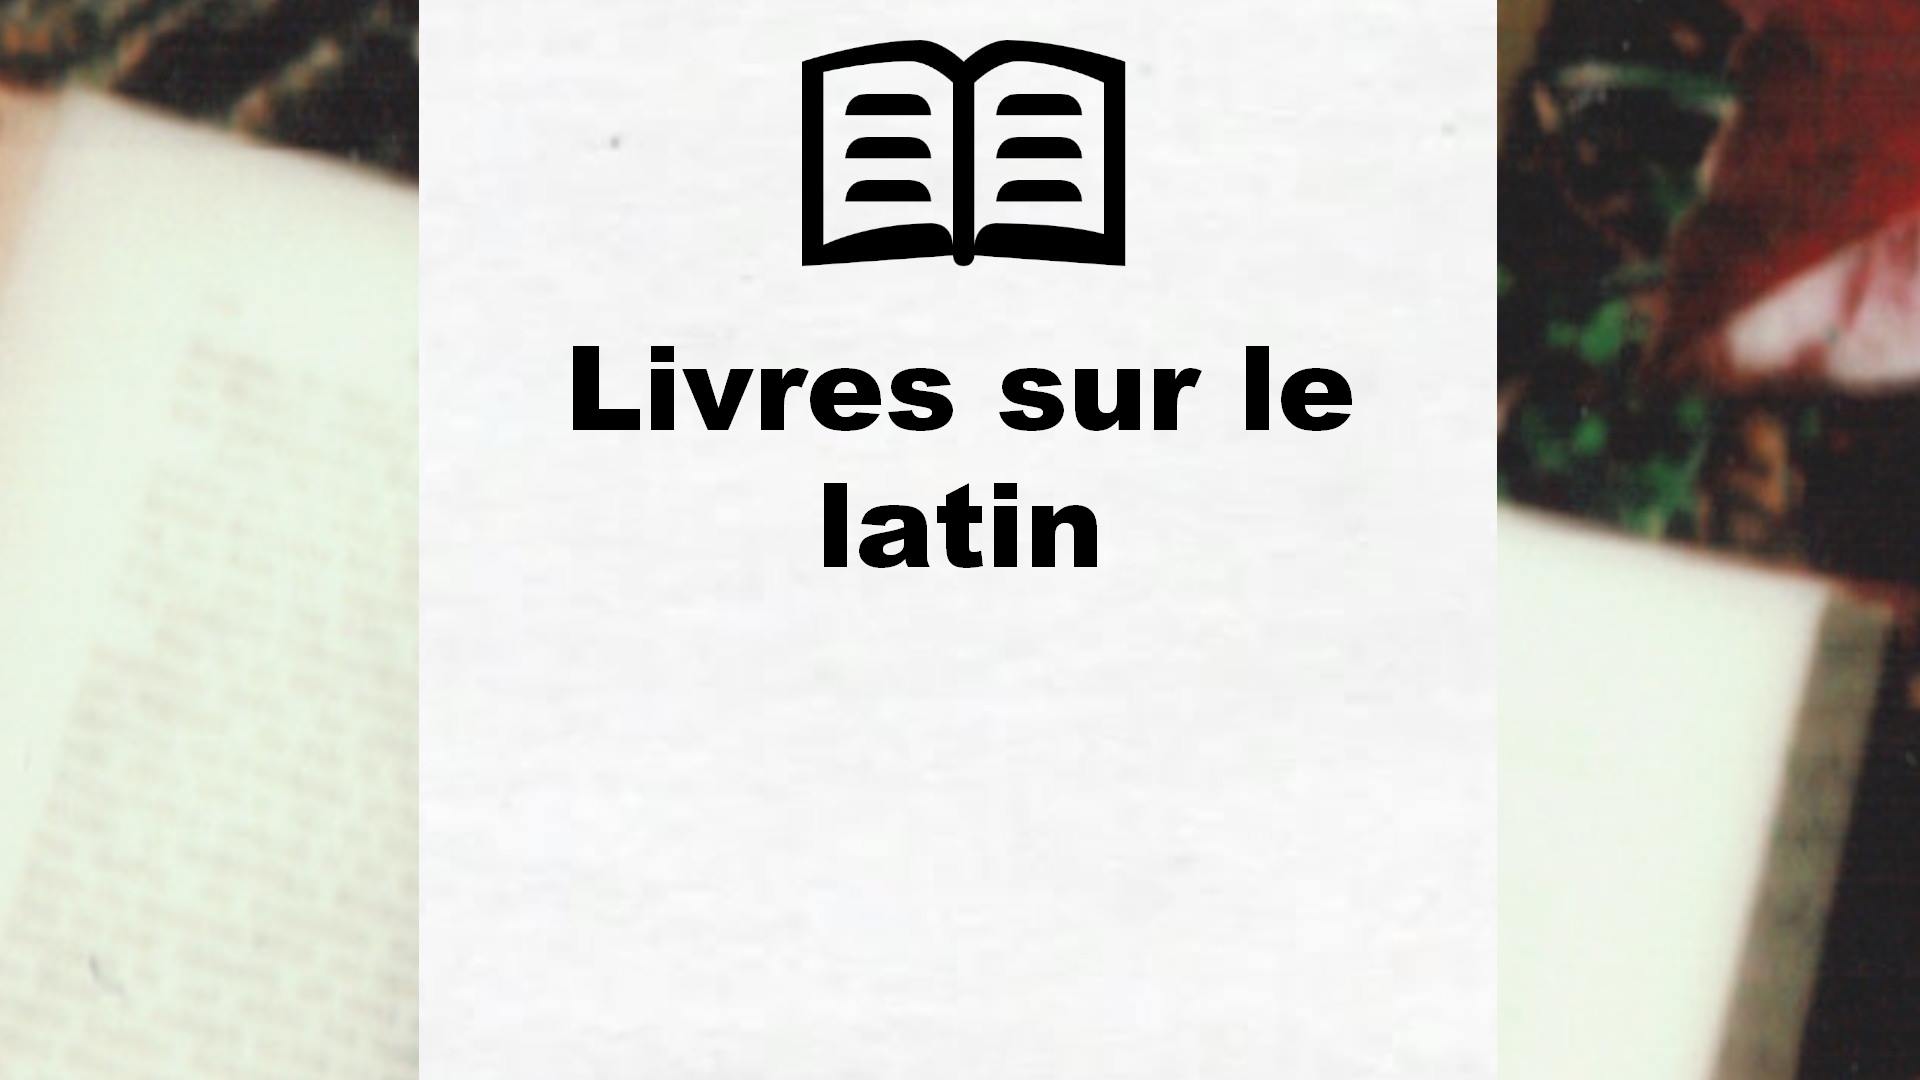 Livres sur le latin